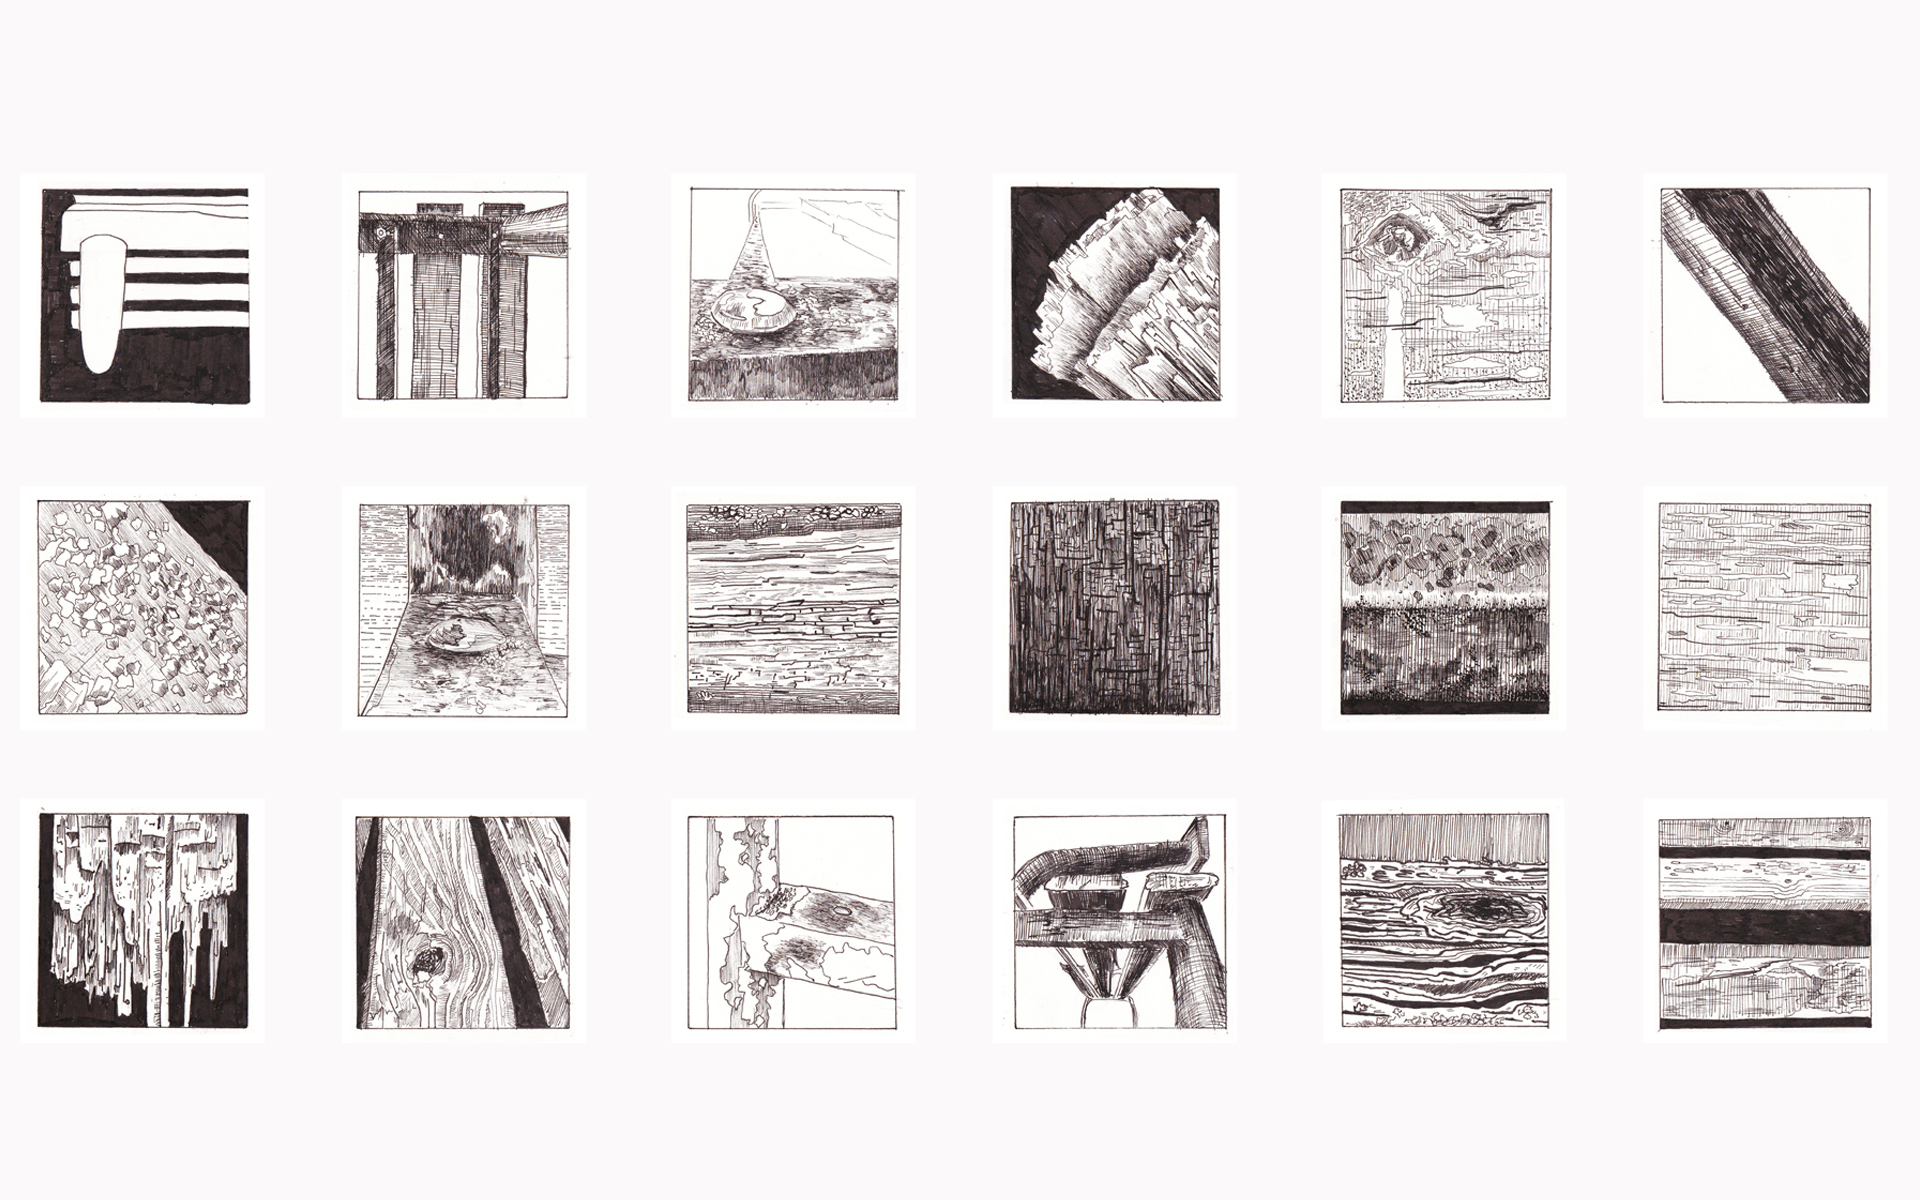 Dokumentacja zawiera rysunki wykonane za pomocą cienkopisu w czerni. Przedstawiają różne ujęcia ławki.